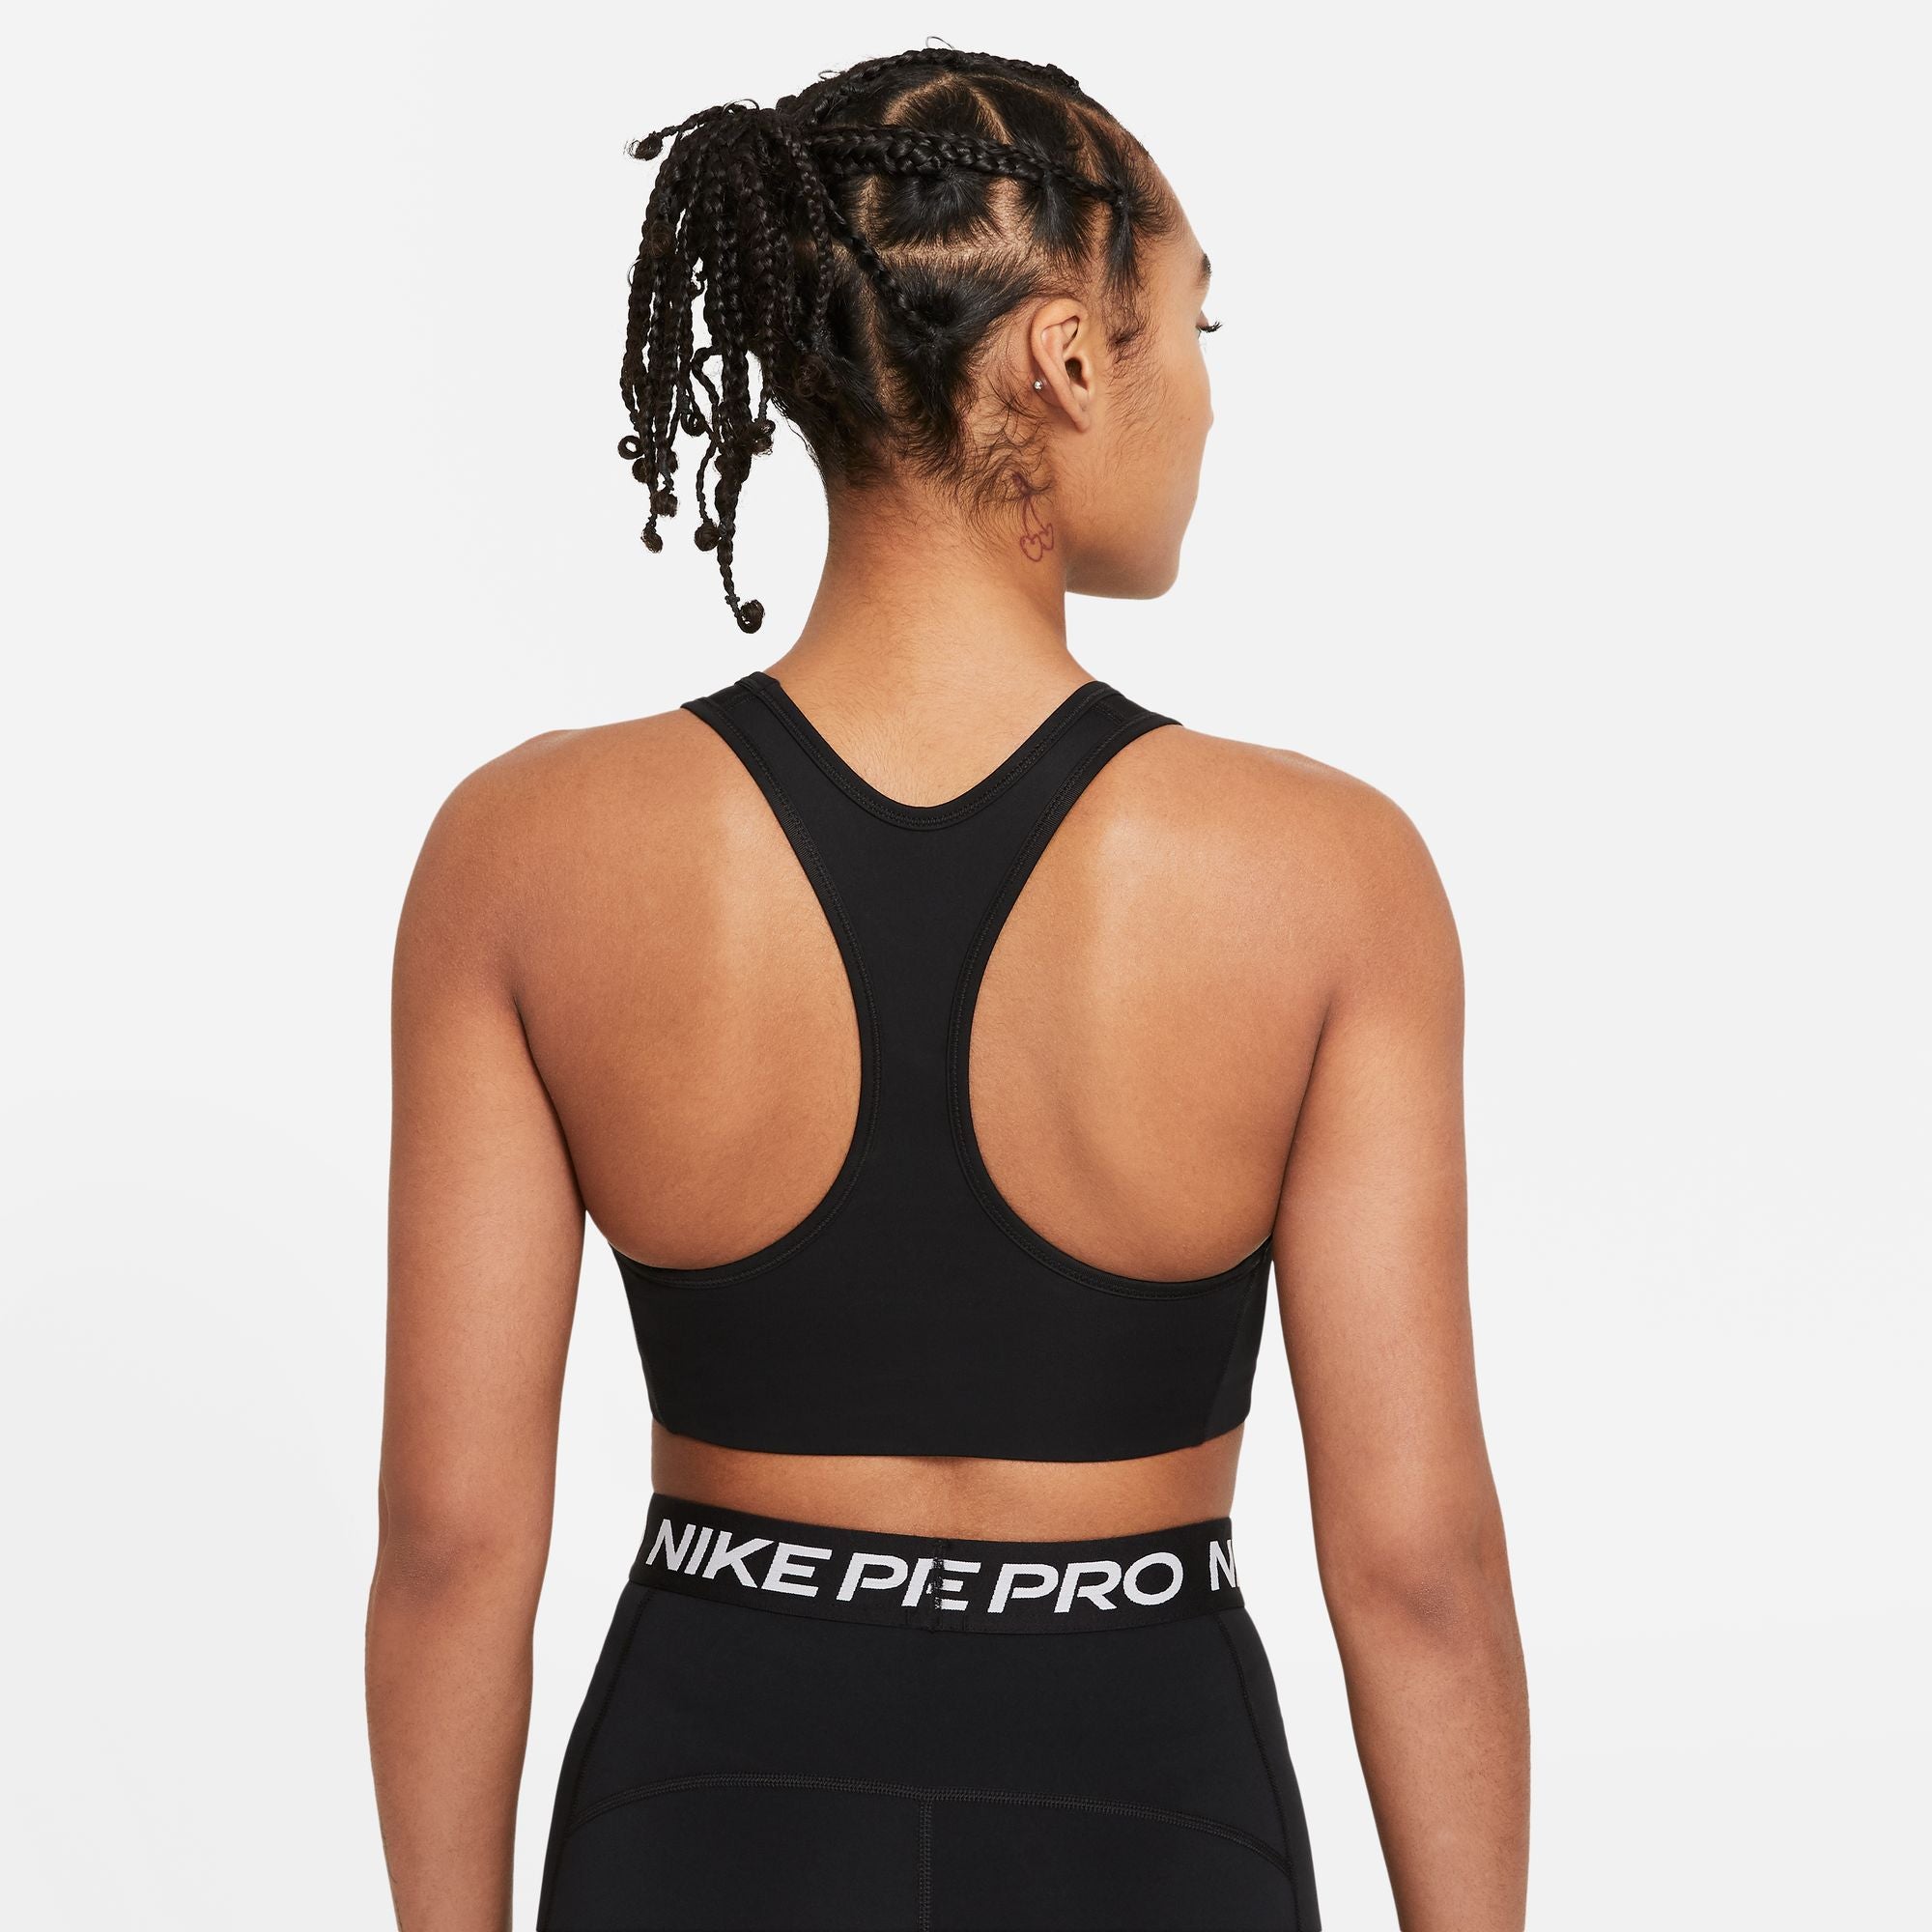 Nike Sports bra SWOOSH ON THE RUN in black/ white